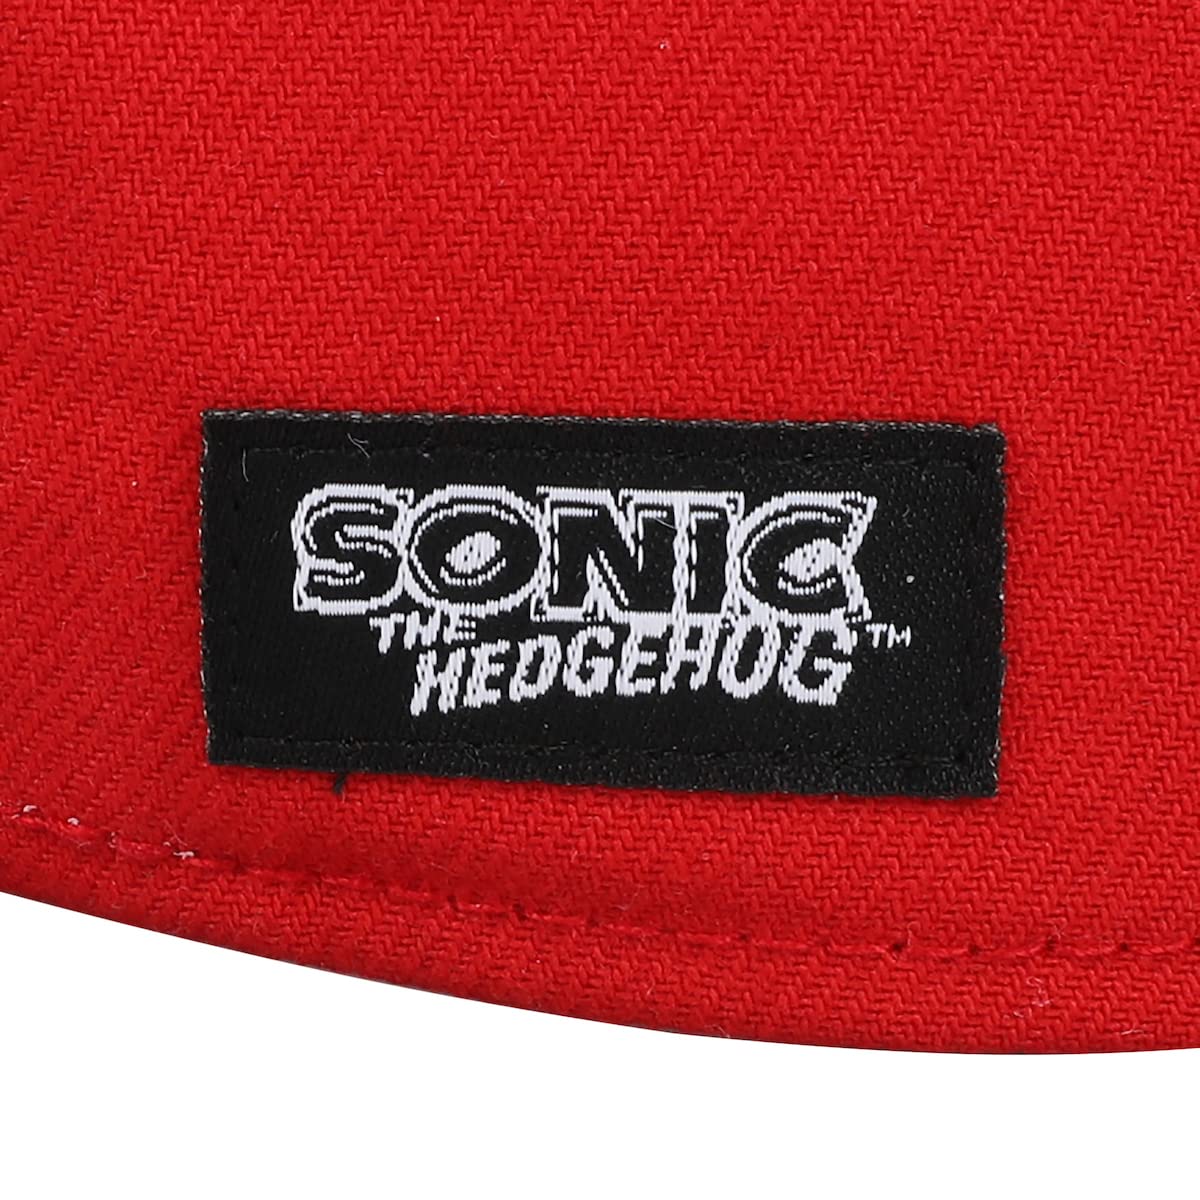 Bioworld Sonic The Hedgehog Knuckles Big Face Men's Red Snapback Hat